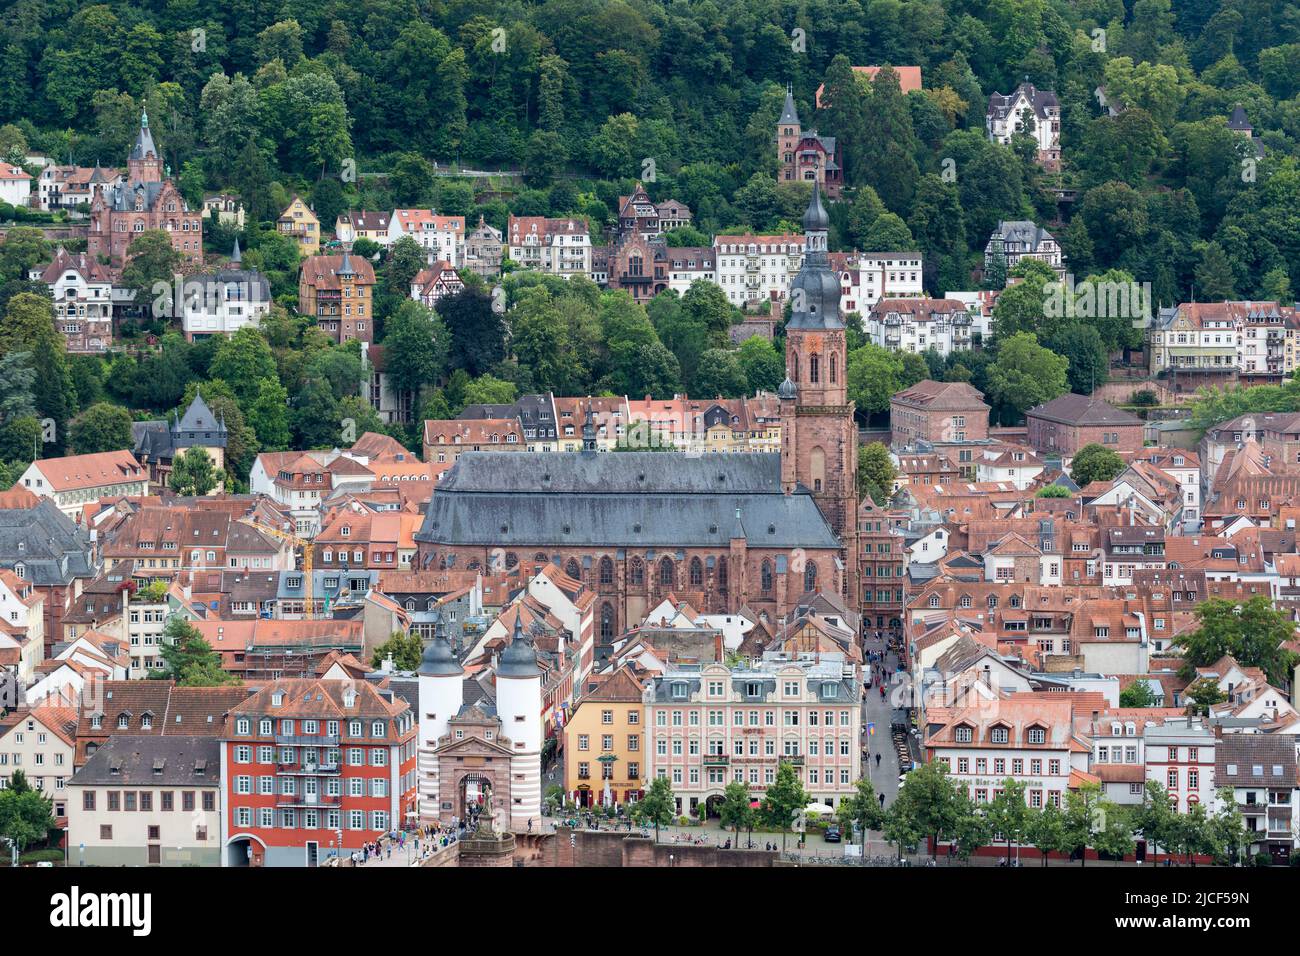 Heidelberg, Germania - 26 agosto 2021: Vista ad angolo alto sulla Heiliggeistkirche (Chiesa dello Spirito Santo). Foto Stock